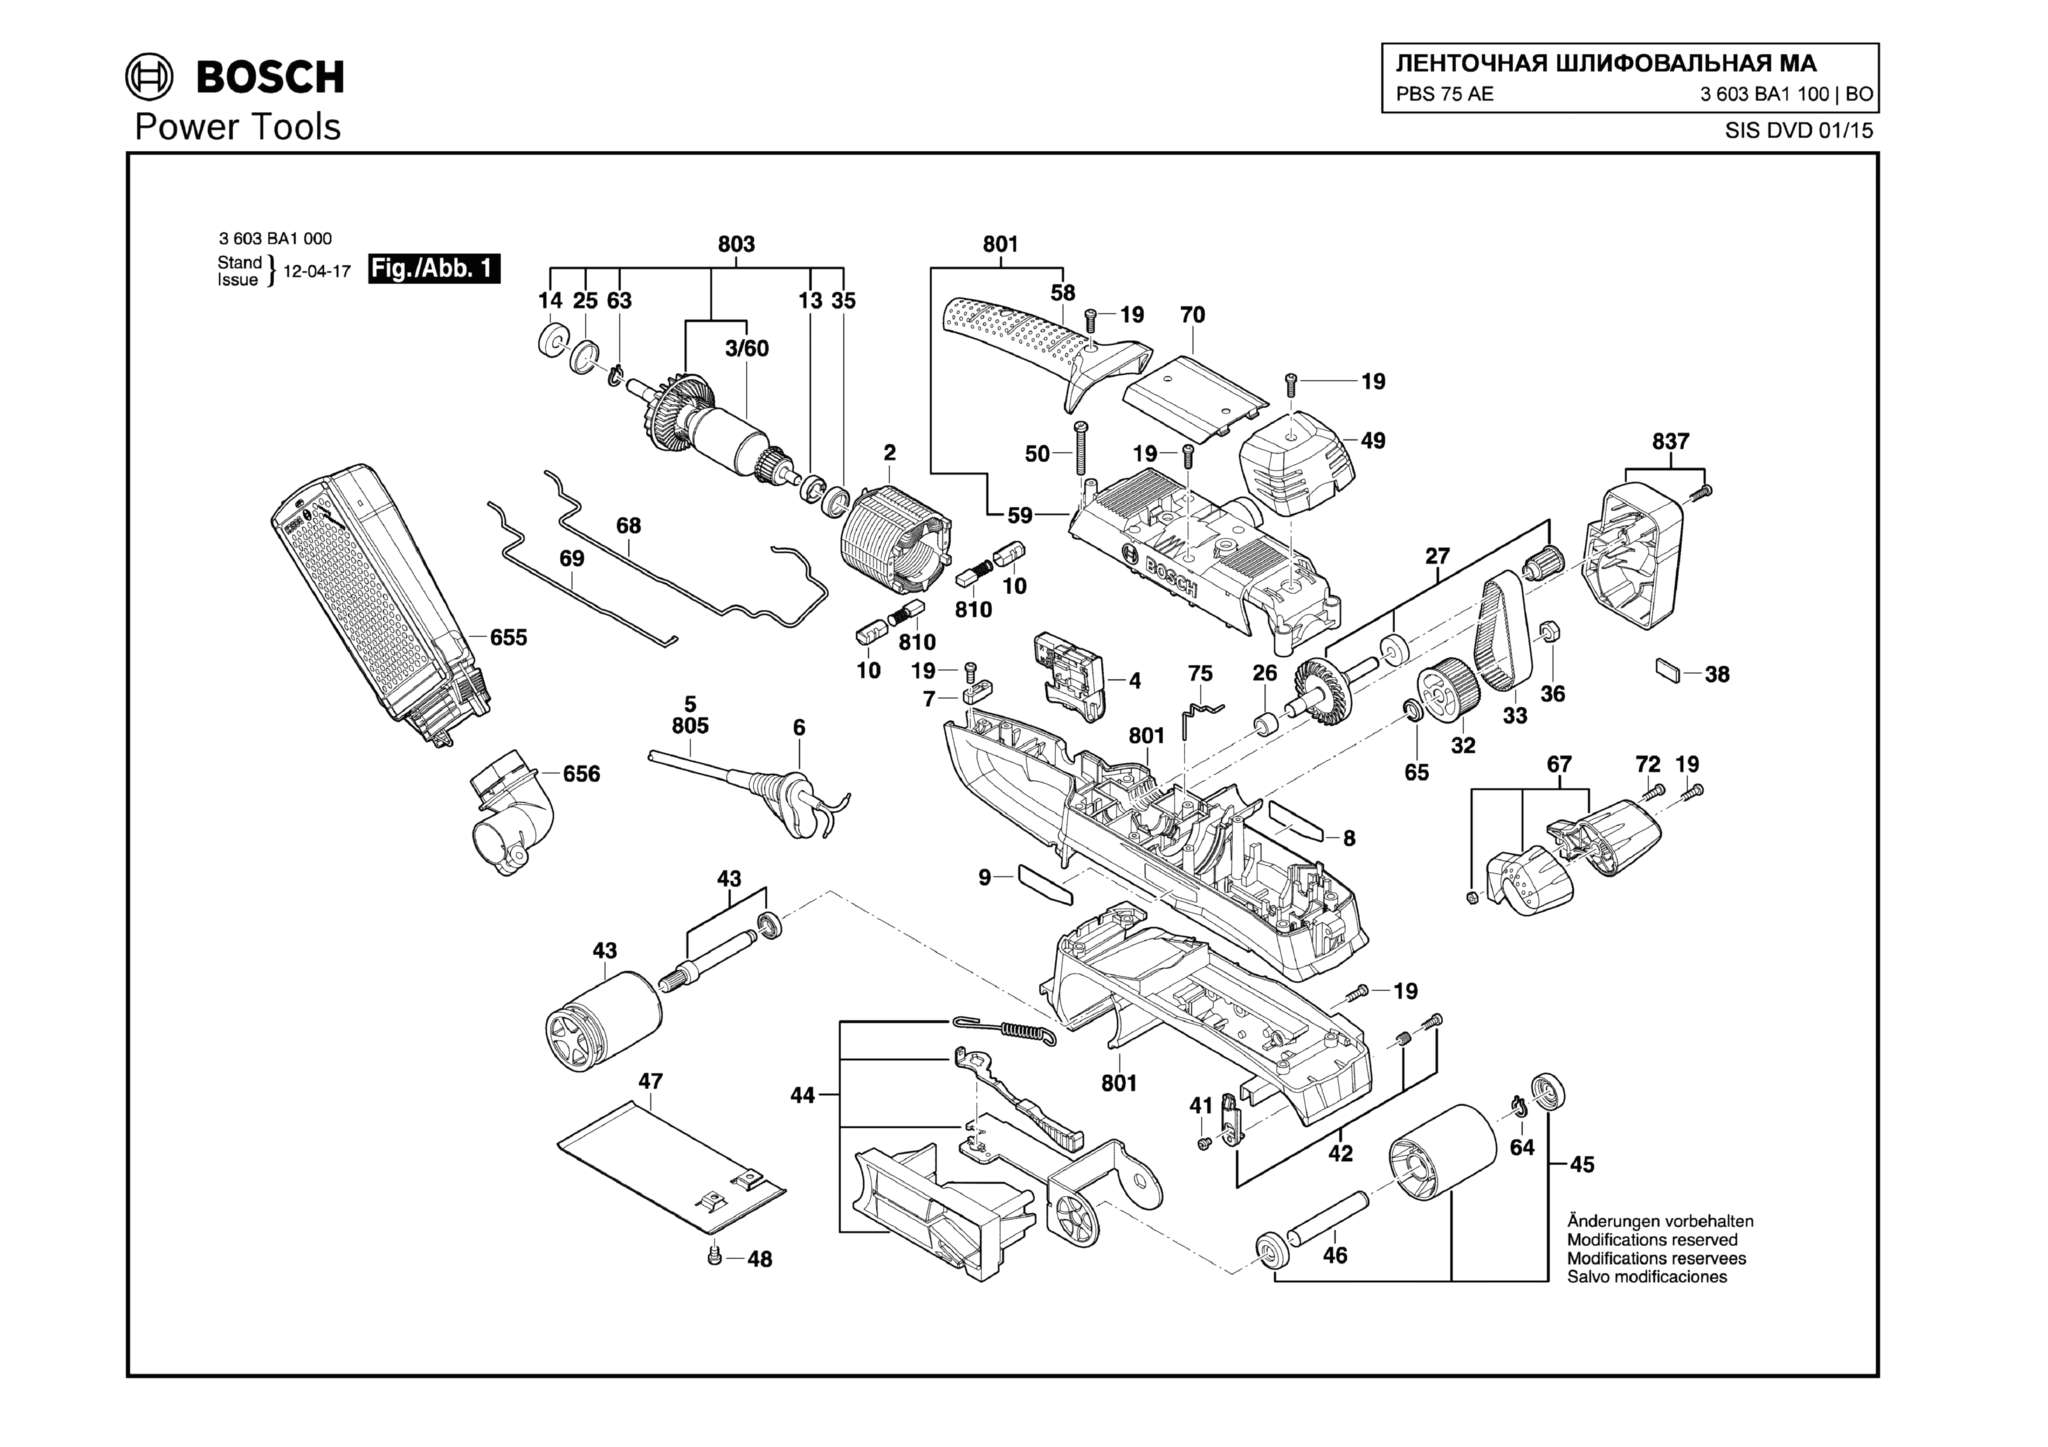 Запчасти, схема и деталировка Bosch PBS 75 AE (ТИП 3603BA1100)